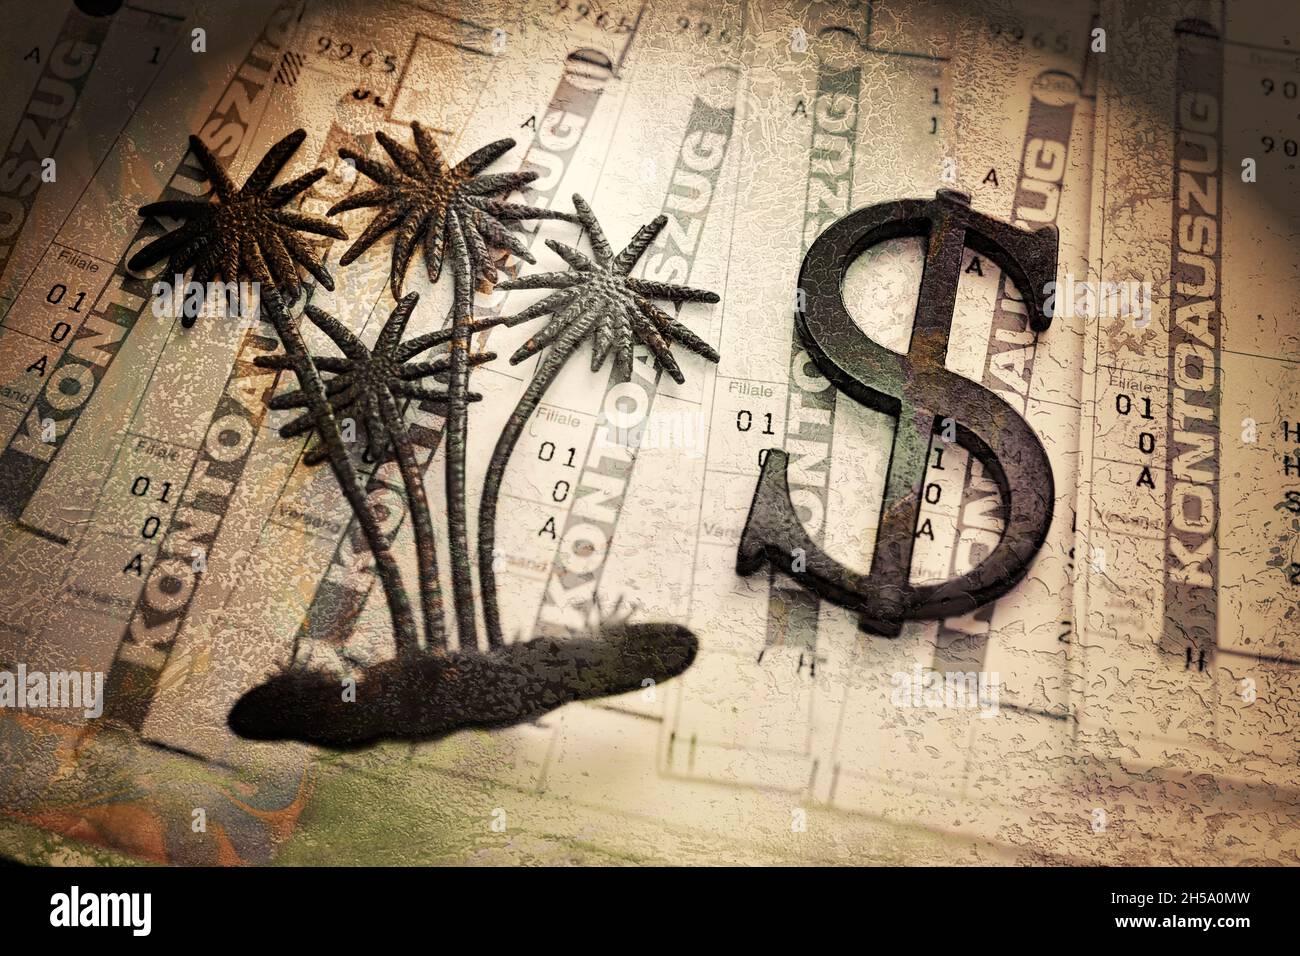 Palme und Dollarzeichen auf Kontoauszügen, Symbolfoto Pandora Papers Steuerskandal Foto de stock